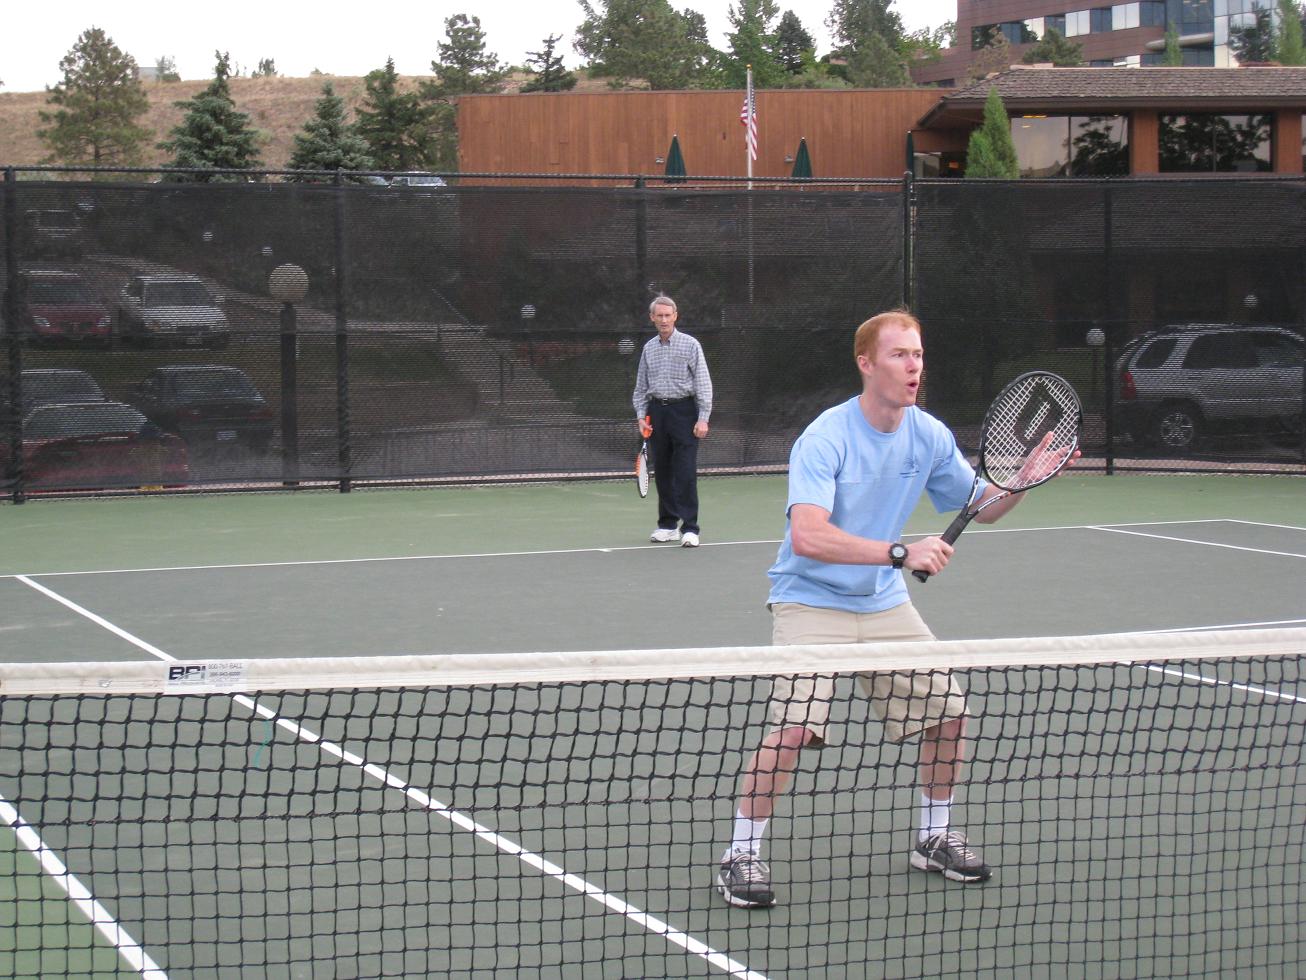 [Kelly+Ogden+and+Pete+Sampras+playing+tennis.jpg]